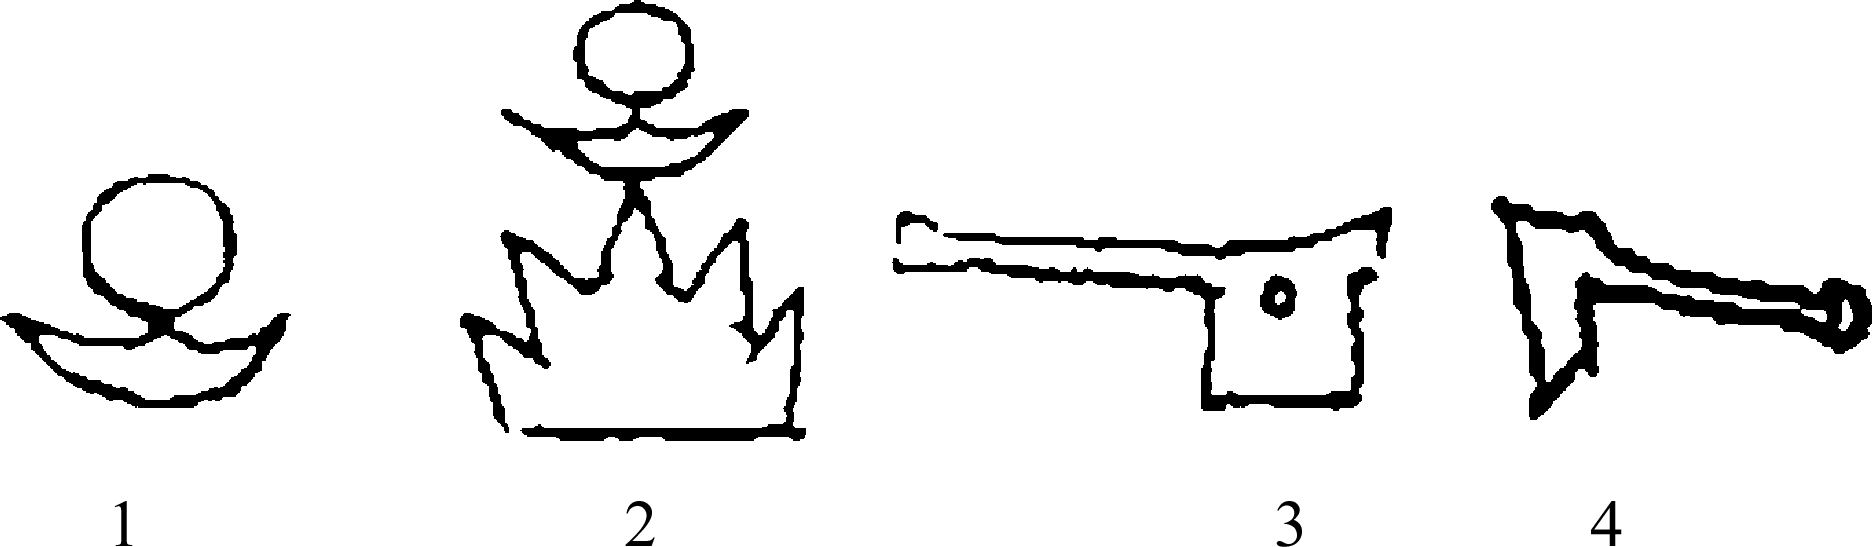 六、大汶口文化陶文符号